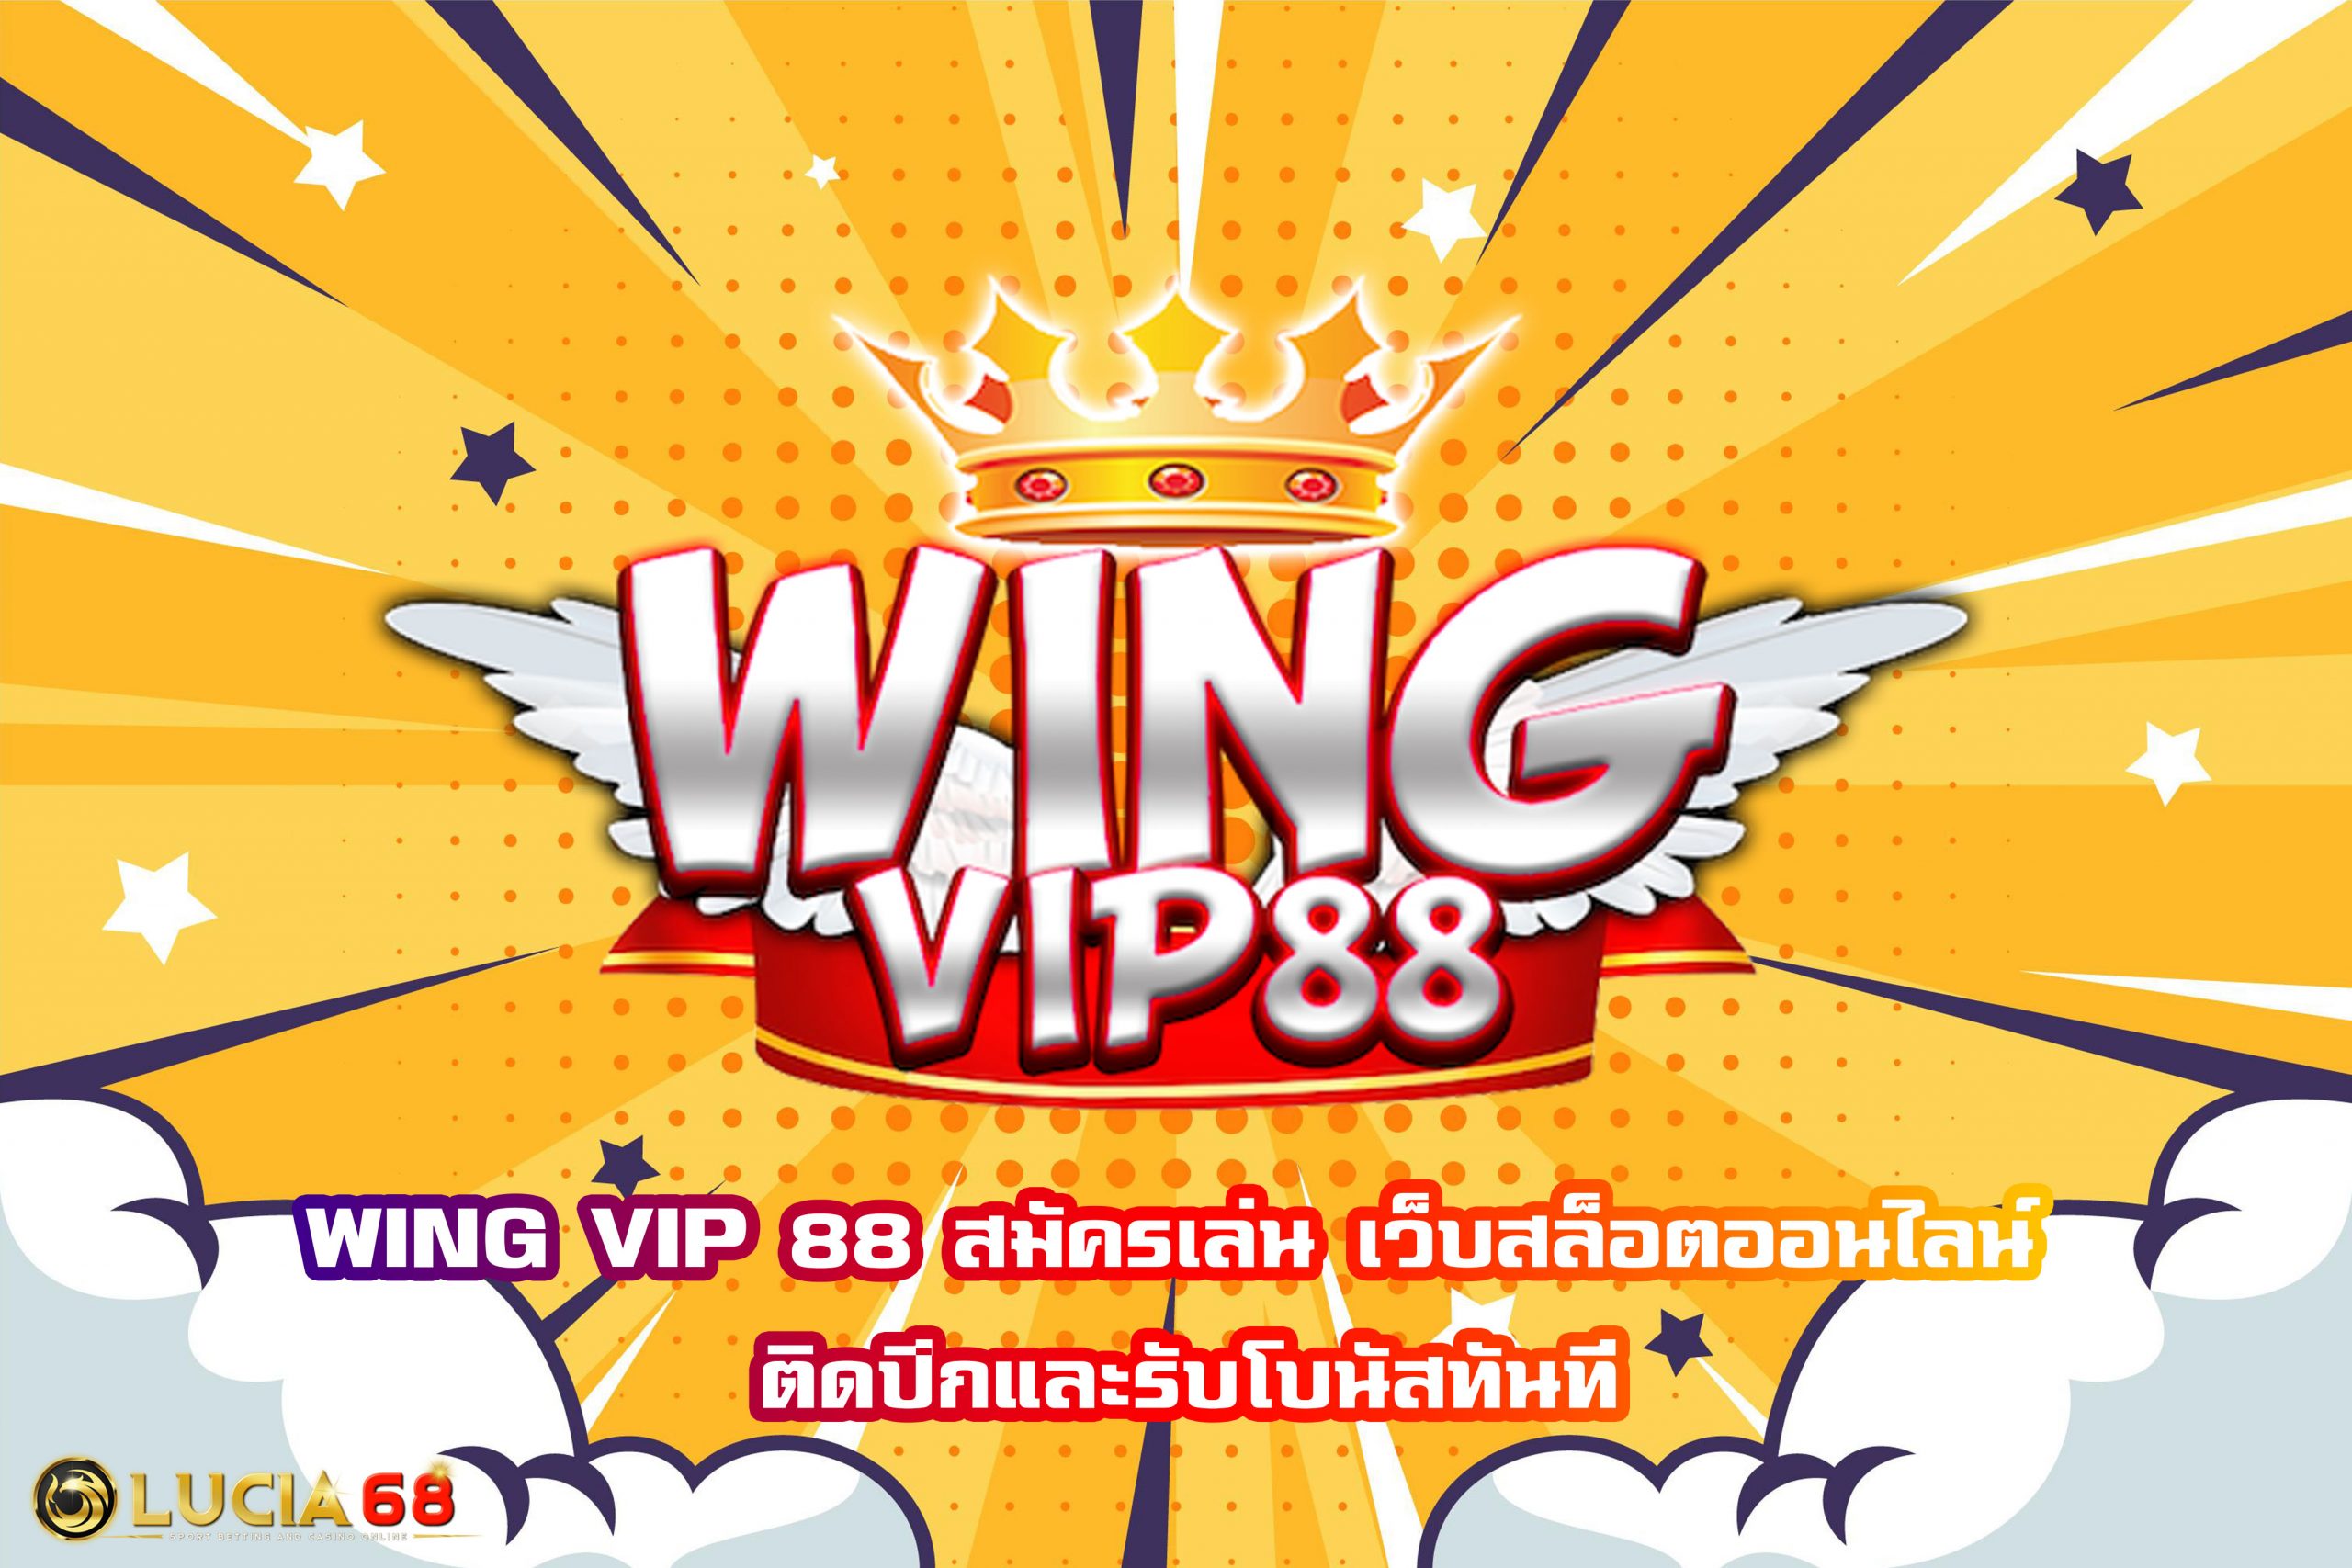 WING VIP 88 สมัครเล่น เว็บสล็อตออนไลน์ ติดปีกและรับโบนัสทันที